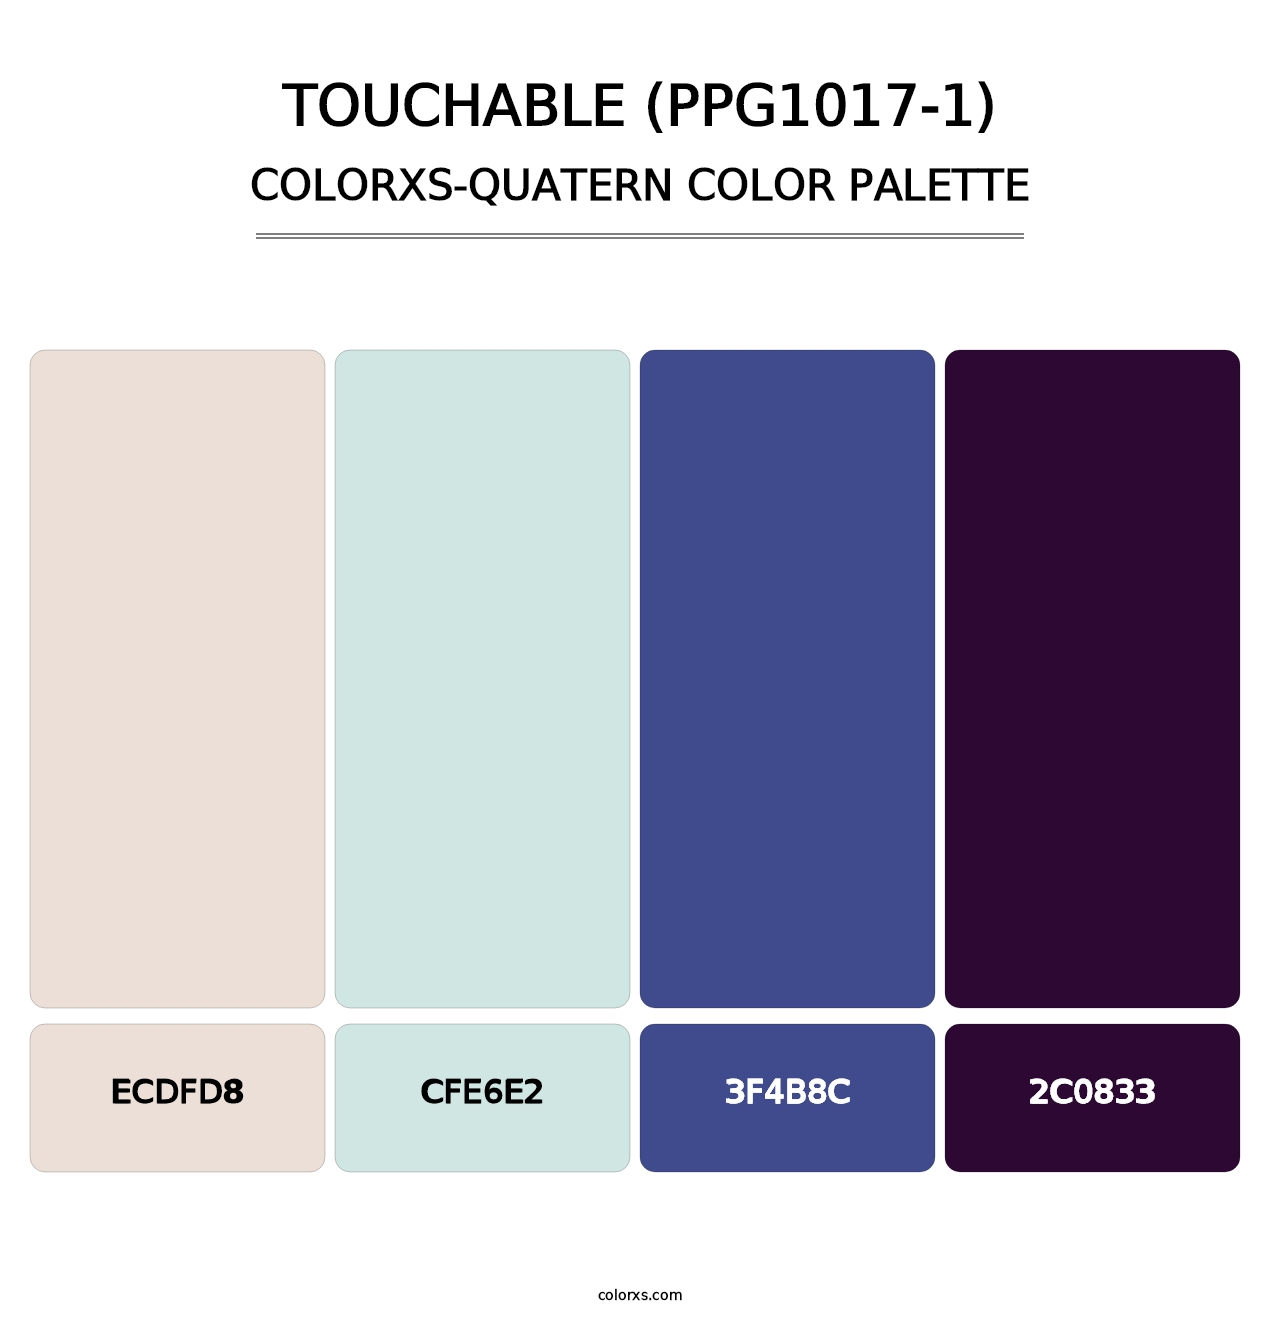 Touchable (PPG1017-1) - Colorxs Quatern Palette